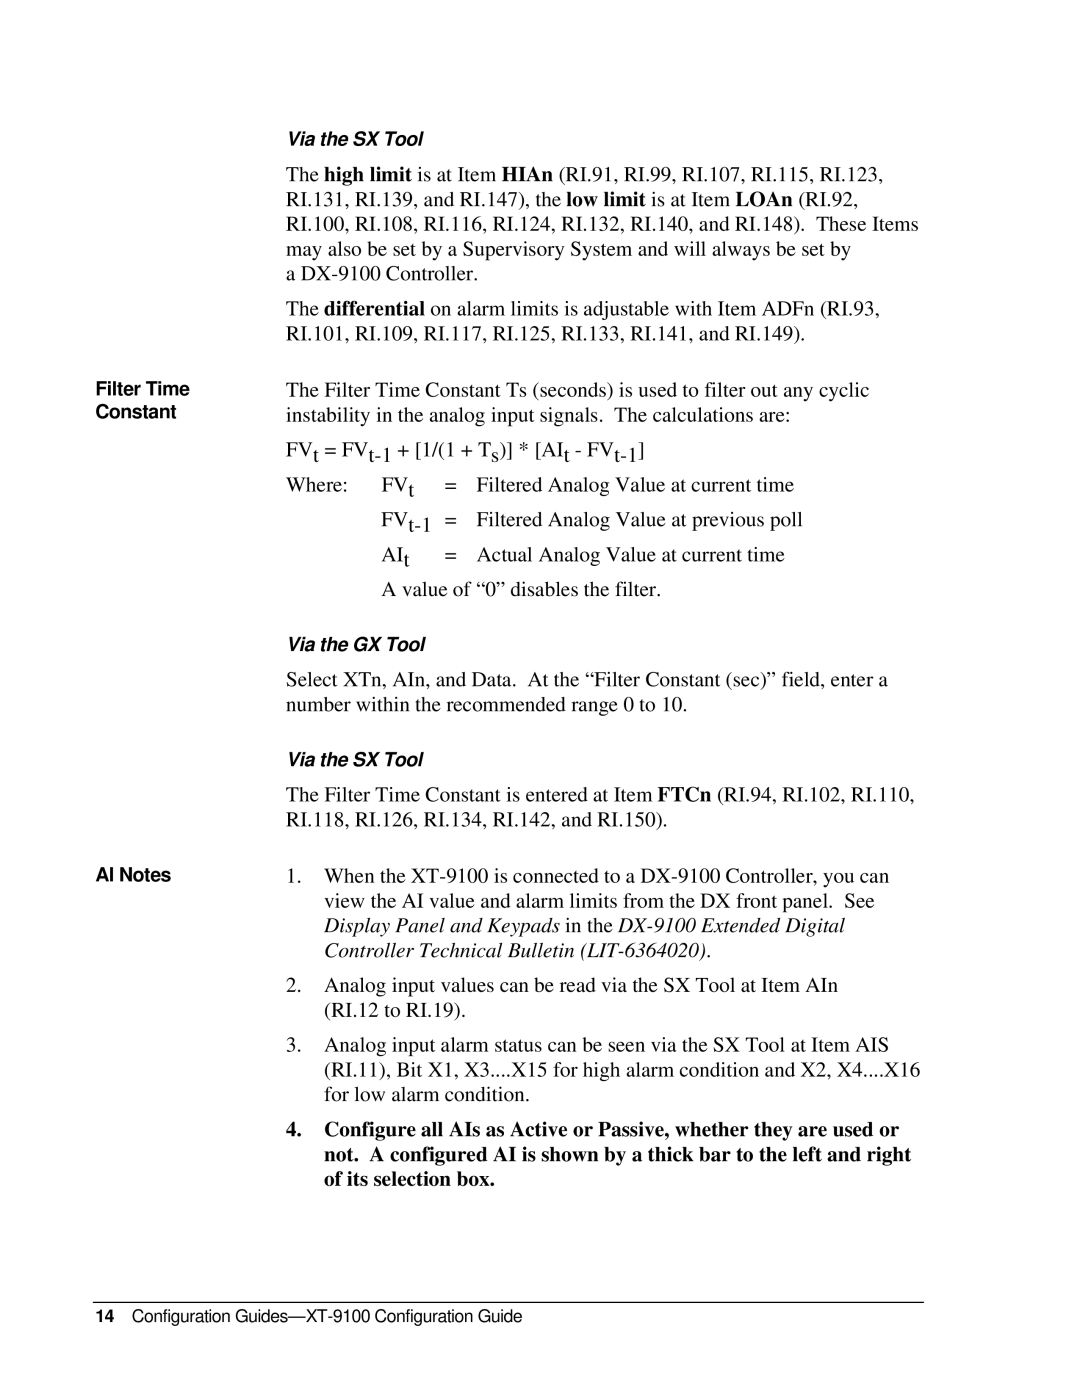 Johnson Controls XP-910x appendix Filter Time Constant AI Notes, Configuration Guides-XT-9100 Configuration Guide 